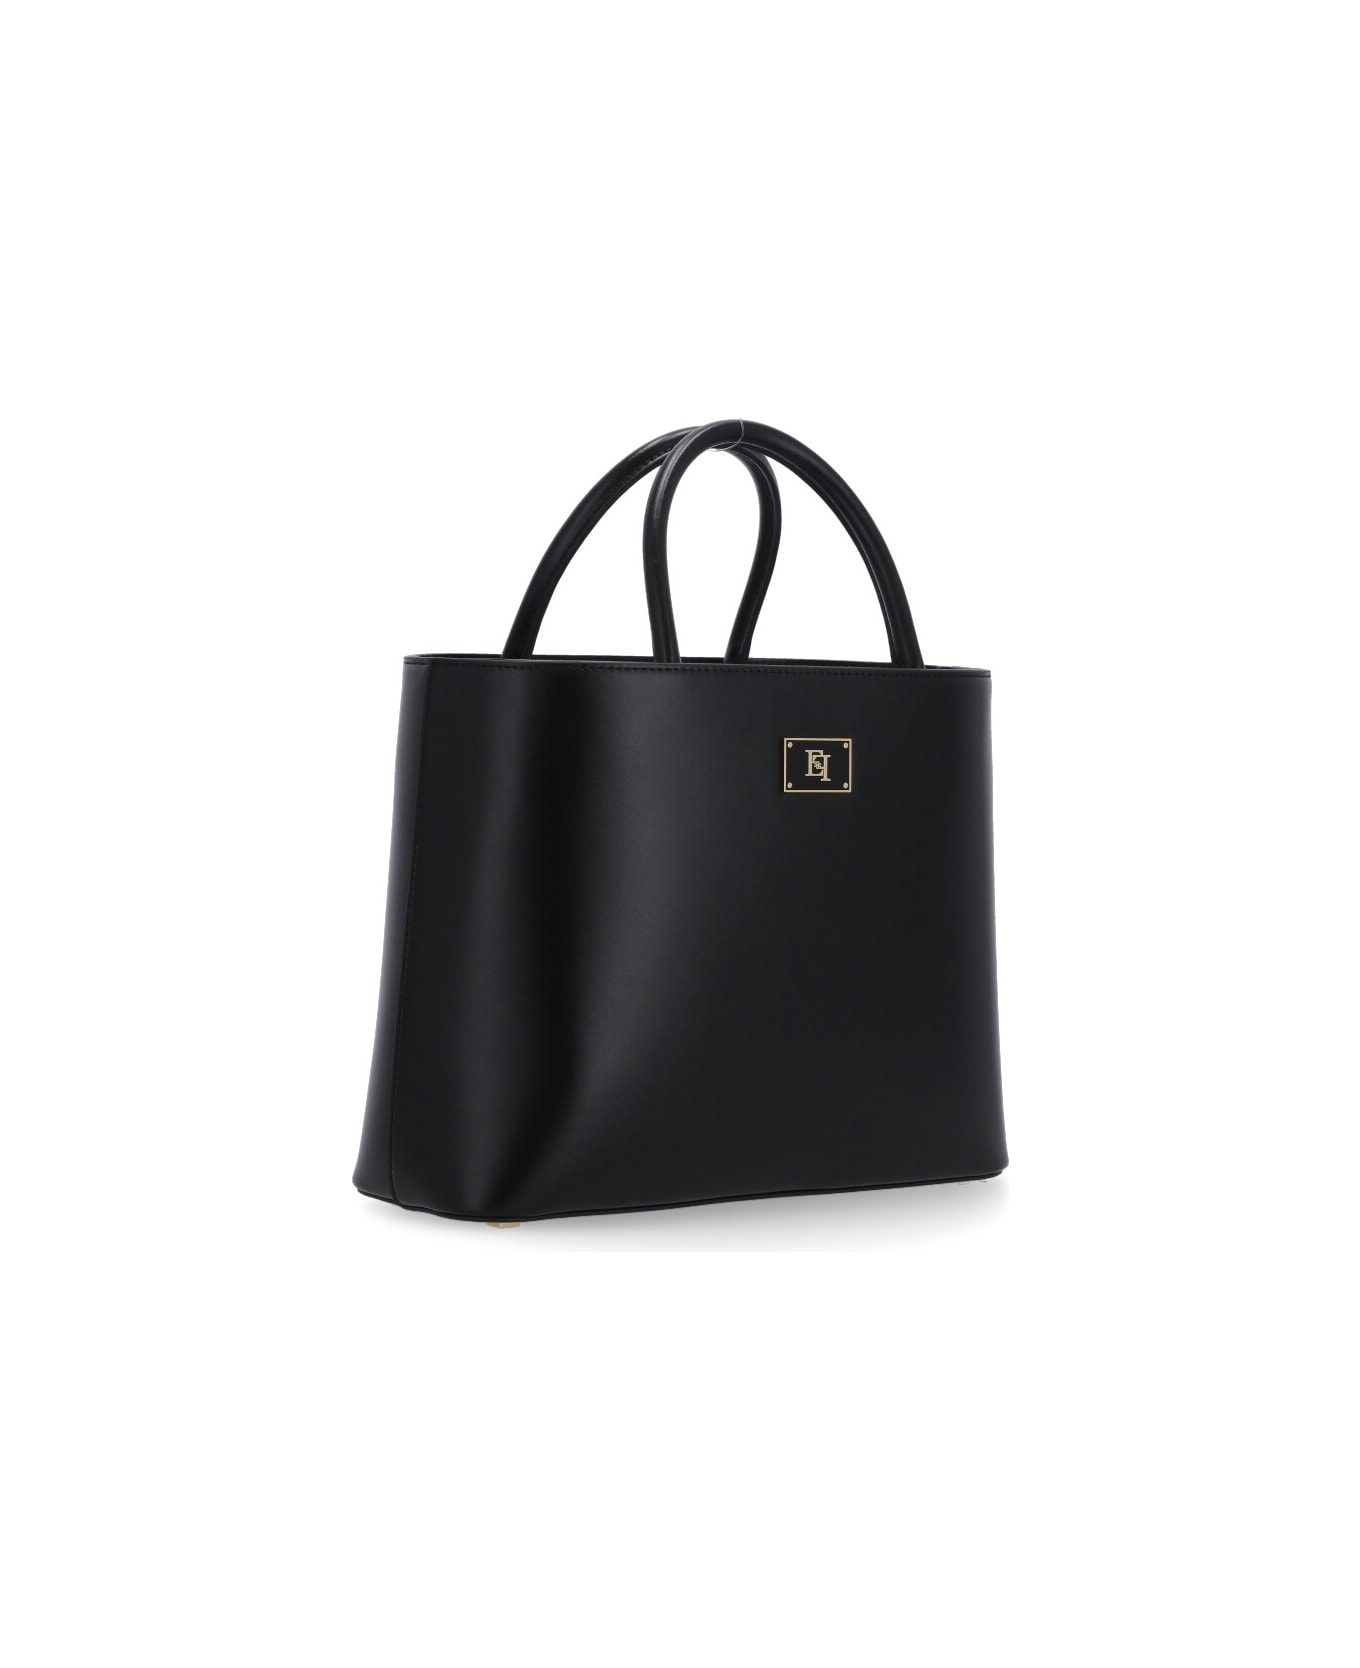 Elisabetta Franchi Shopper Bag Elisabetta Franchi - Black トートバッグ